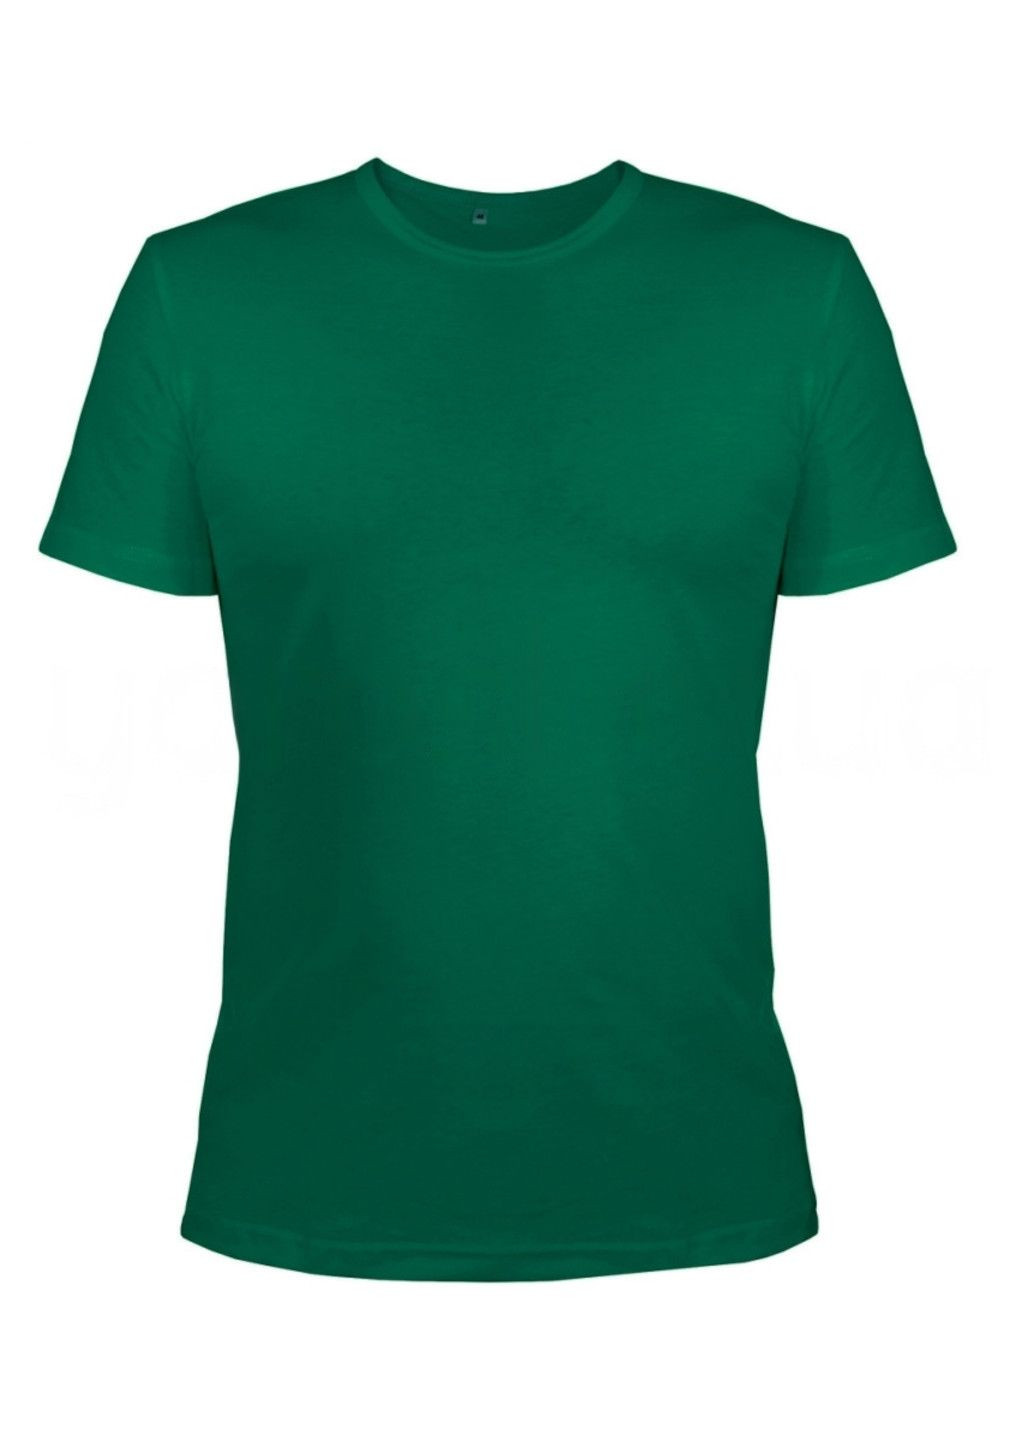 Зеленая всесезон футболка женская м.45 с коротким рукавом Ярослав